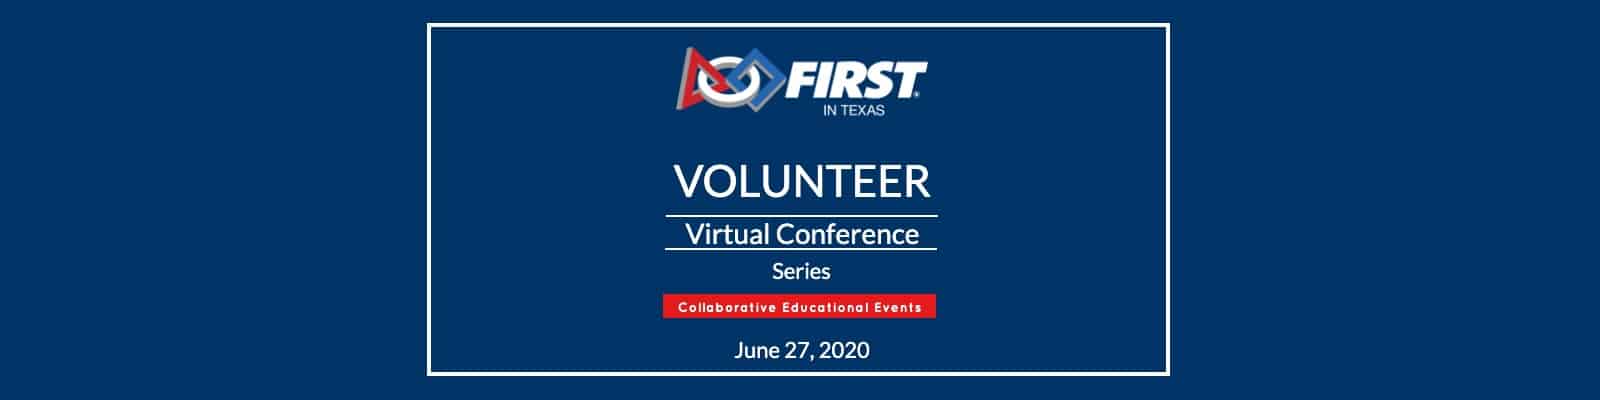 Volunteer Virtual Conference Header graphic